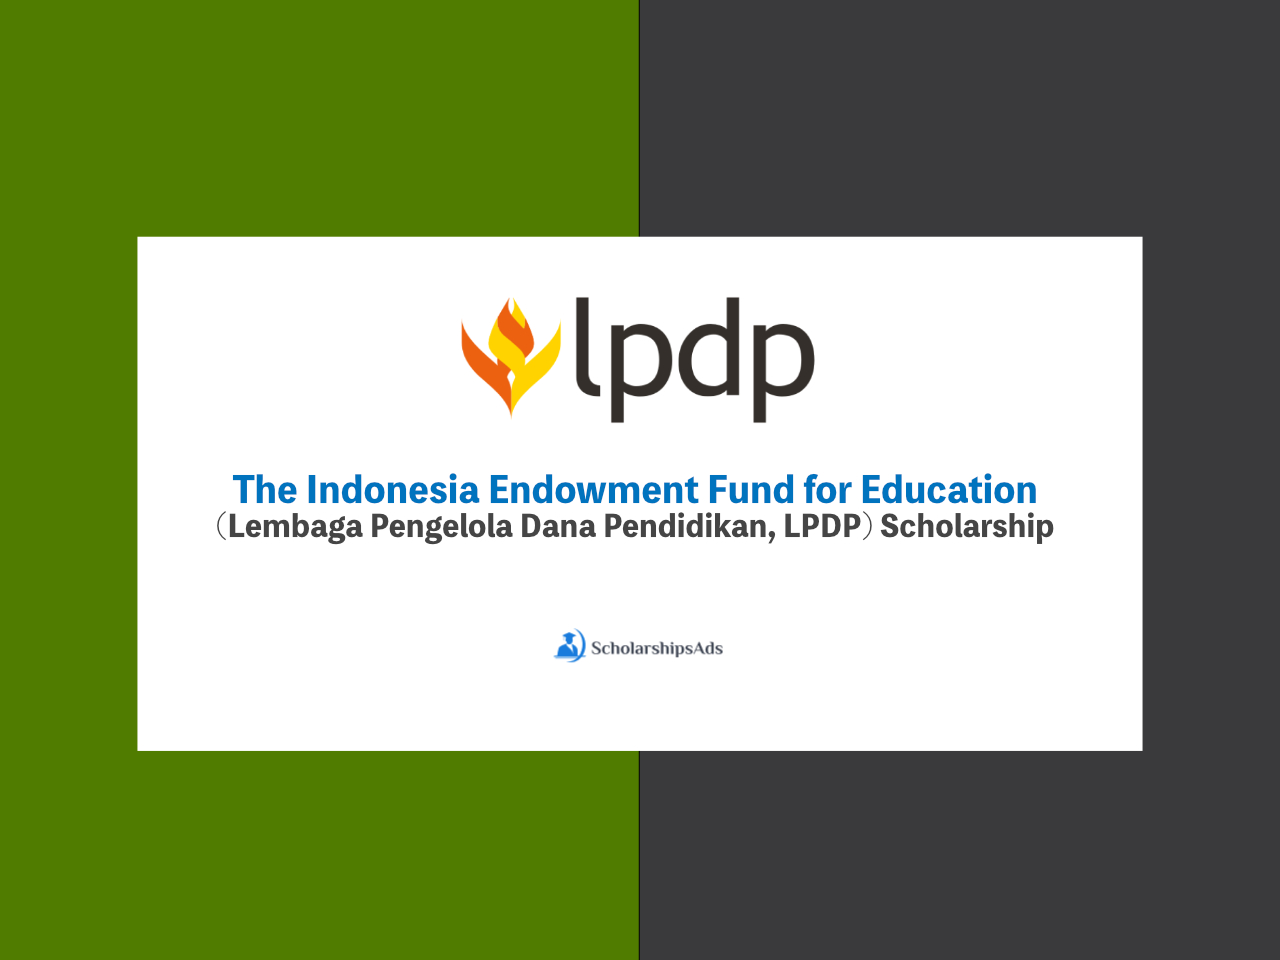  The Indonesia Endowment Fund for Education (Lembaga Pengelola Dana Pendidikan, LPDP) Scholarships. 